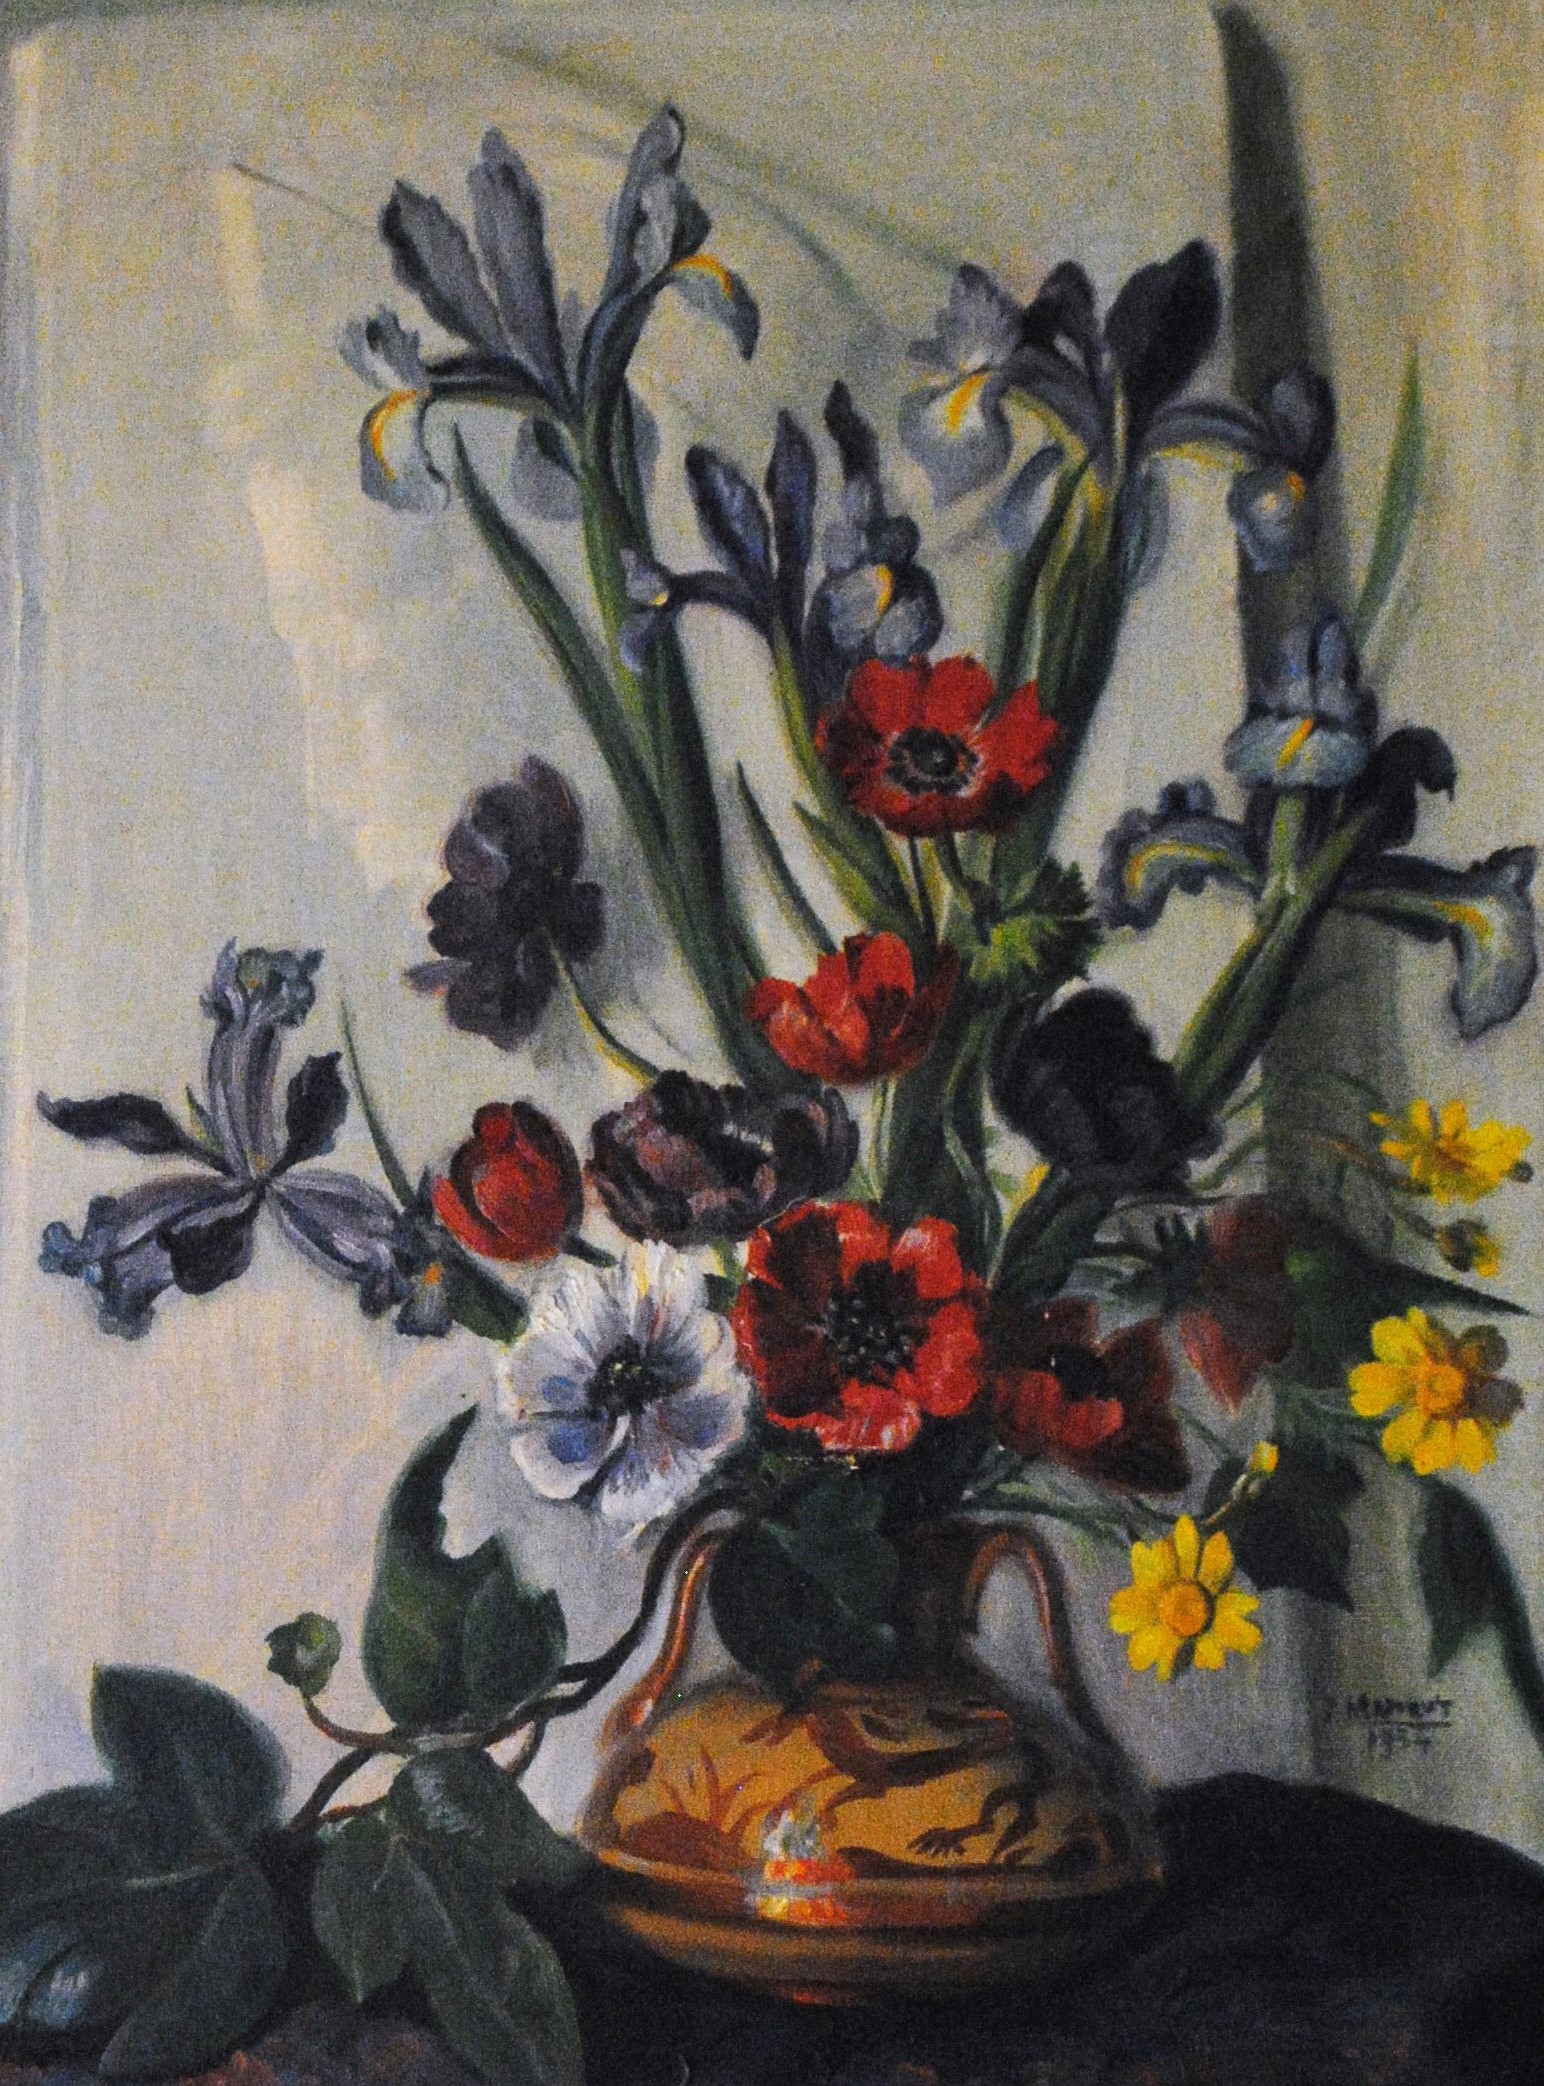 Pintura de José Manaut titulada Jarrón con flores (violetas, amapolas), 1954. Óleo sobre lienzo.